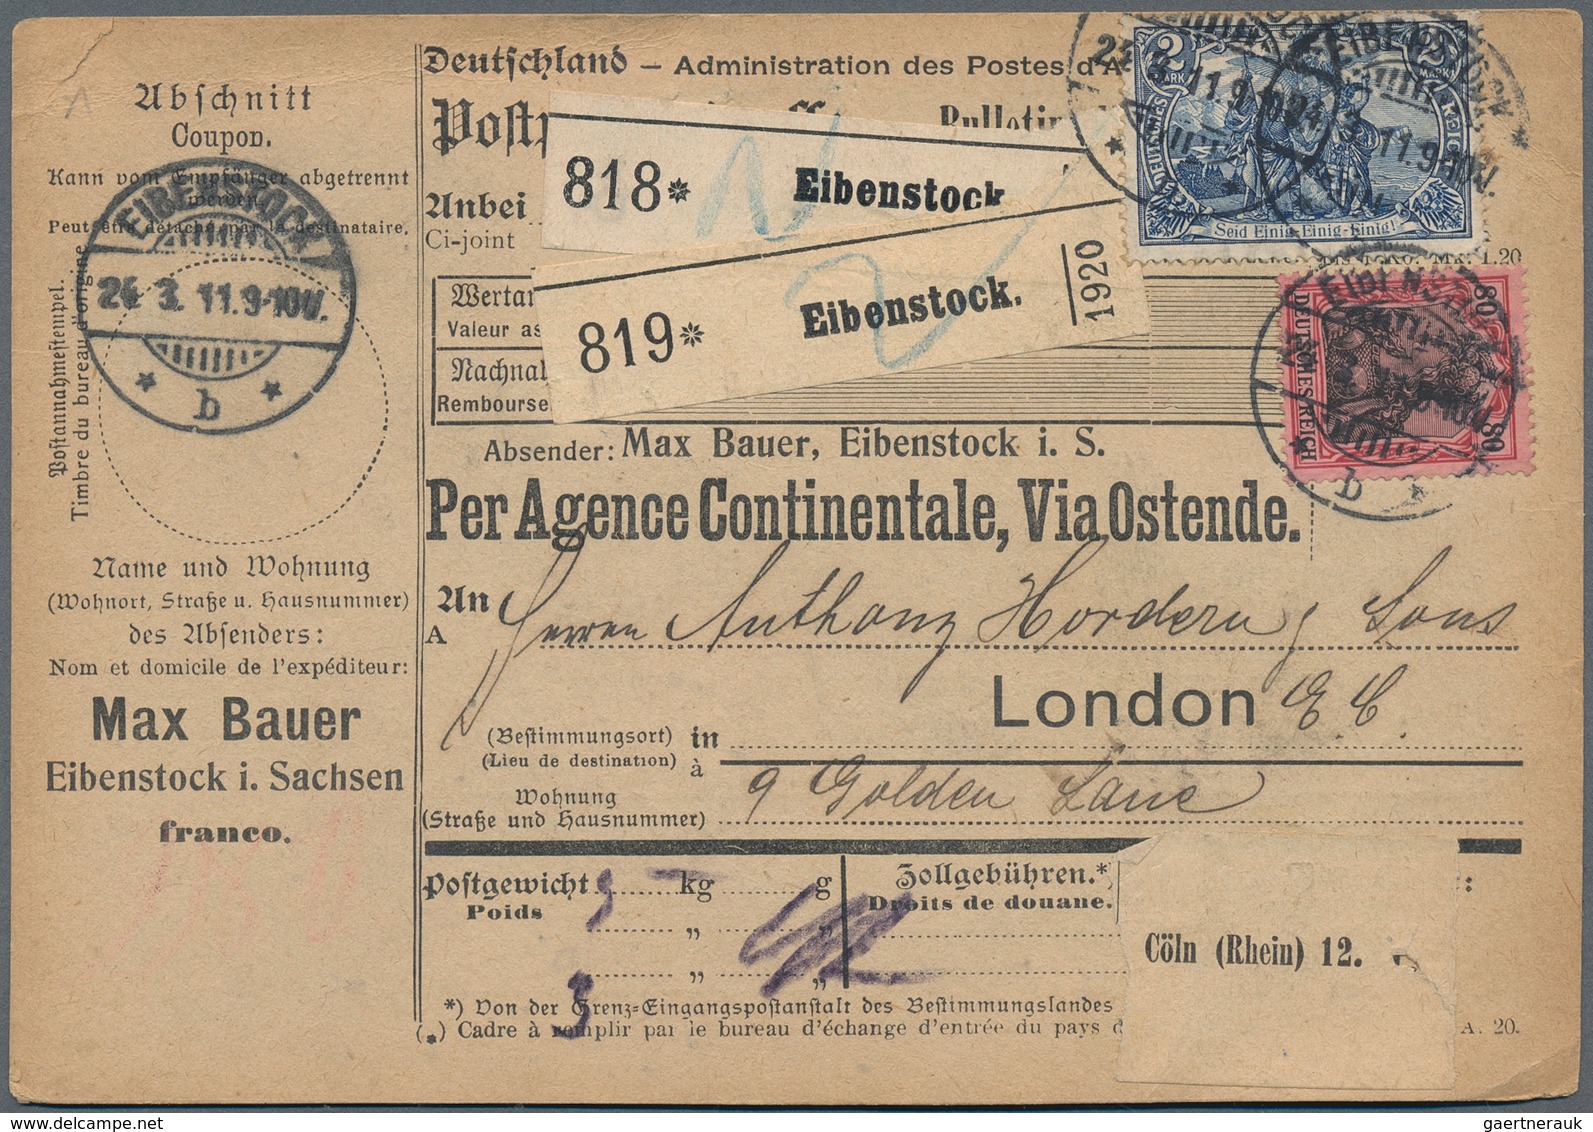 Deutschland: 1850/1960 (ca.), vielseitiger Bestand von ca. 530 Briefen, Karten und Ganzsachen, dabei